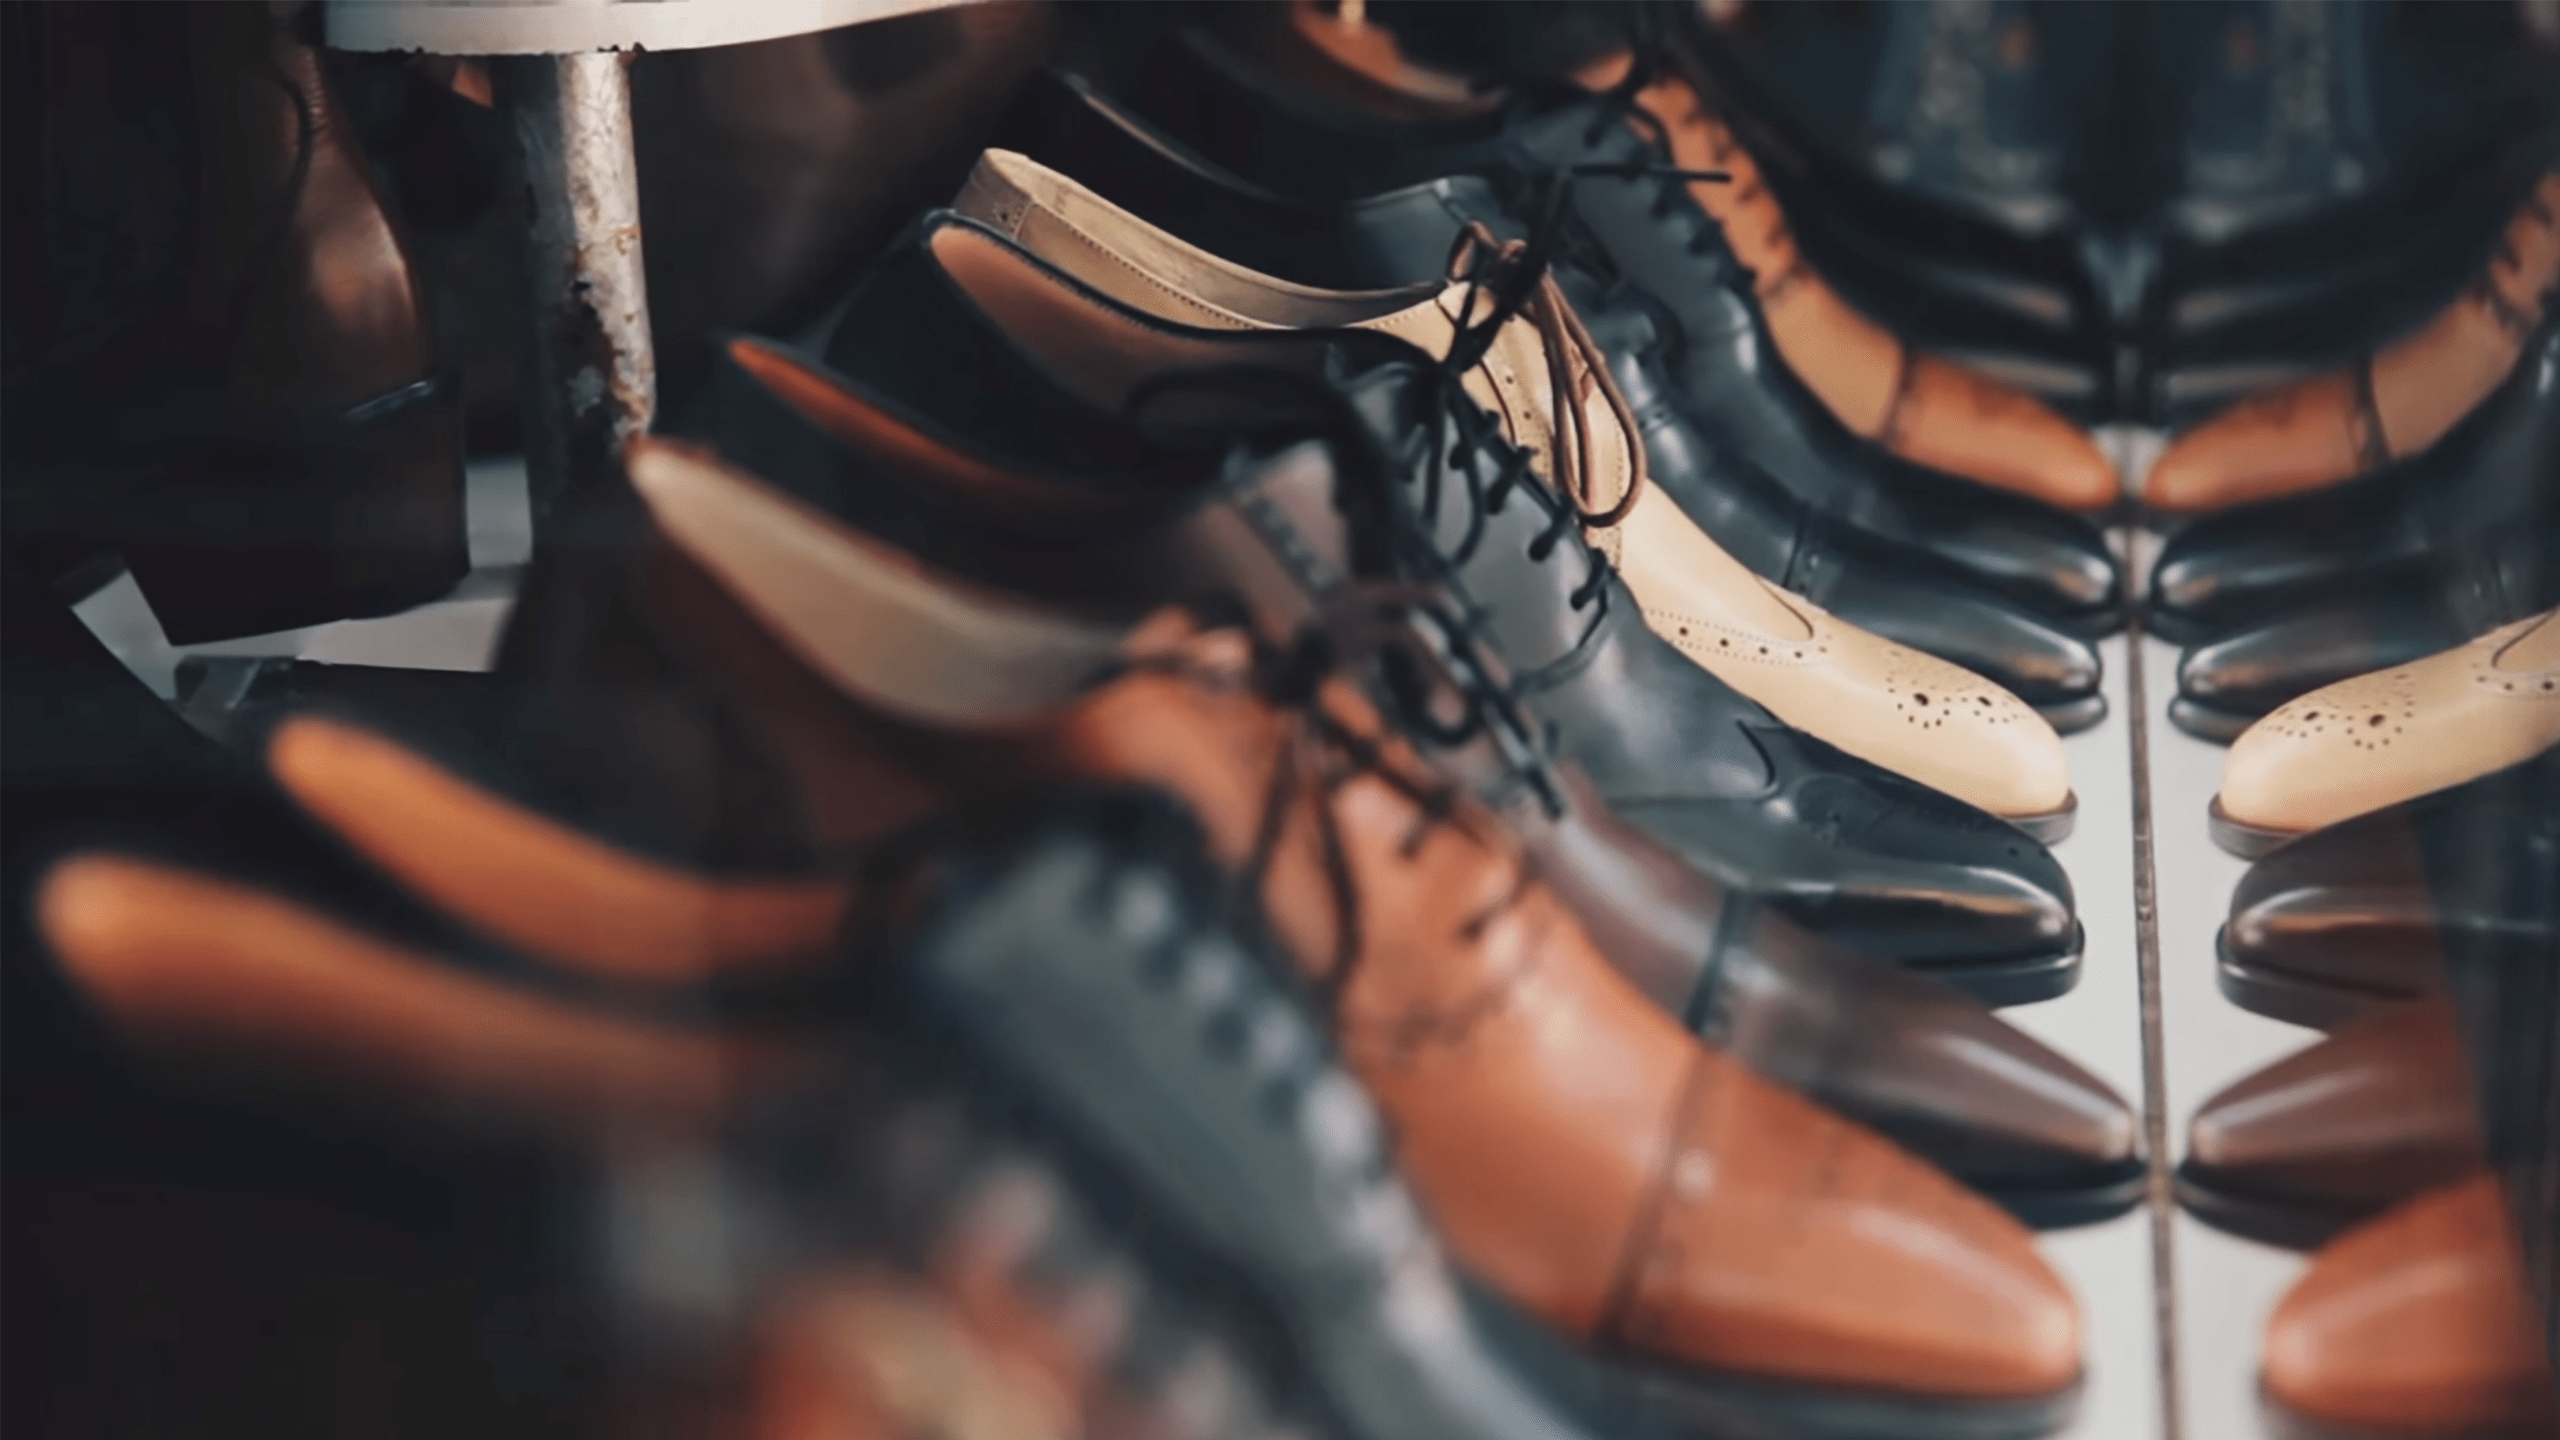 Le Monde: ‘L’industria calzaturiera marchigiana vede nero’